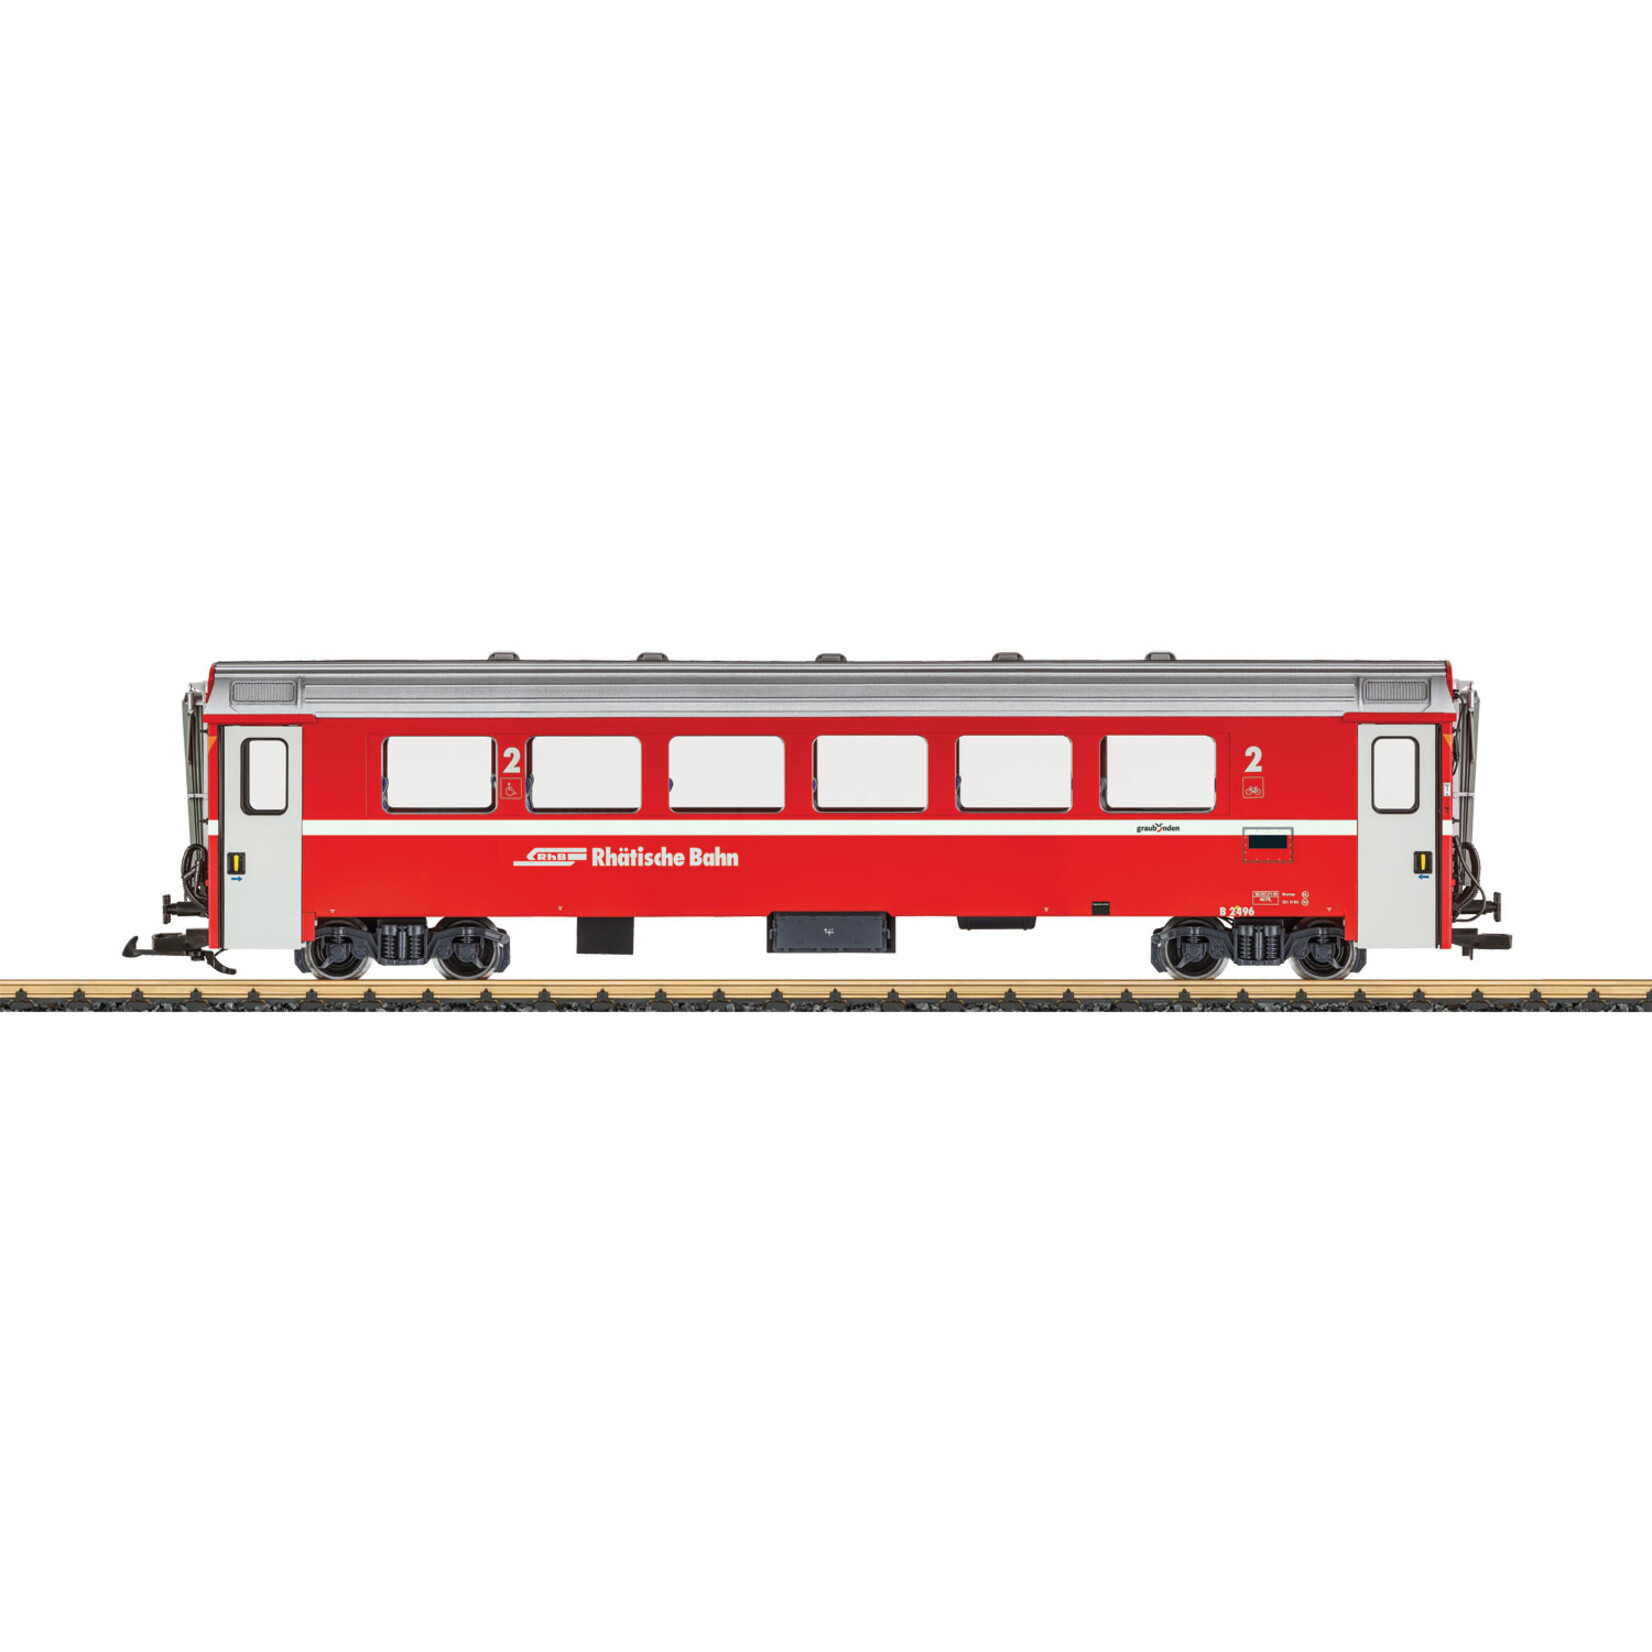 LGB LGB 30512 RhB Mark IV Express Train Passenger Car, 2nd class